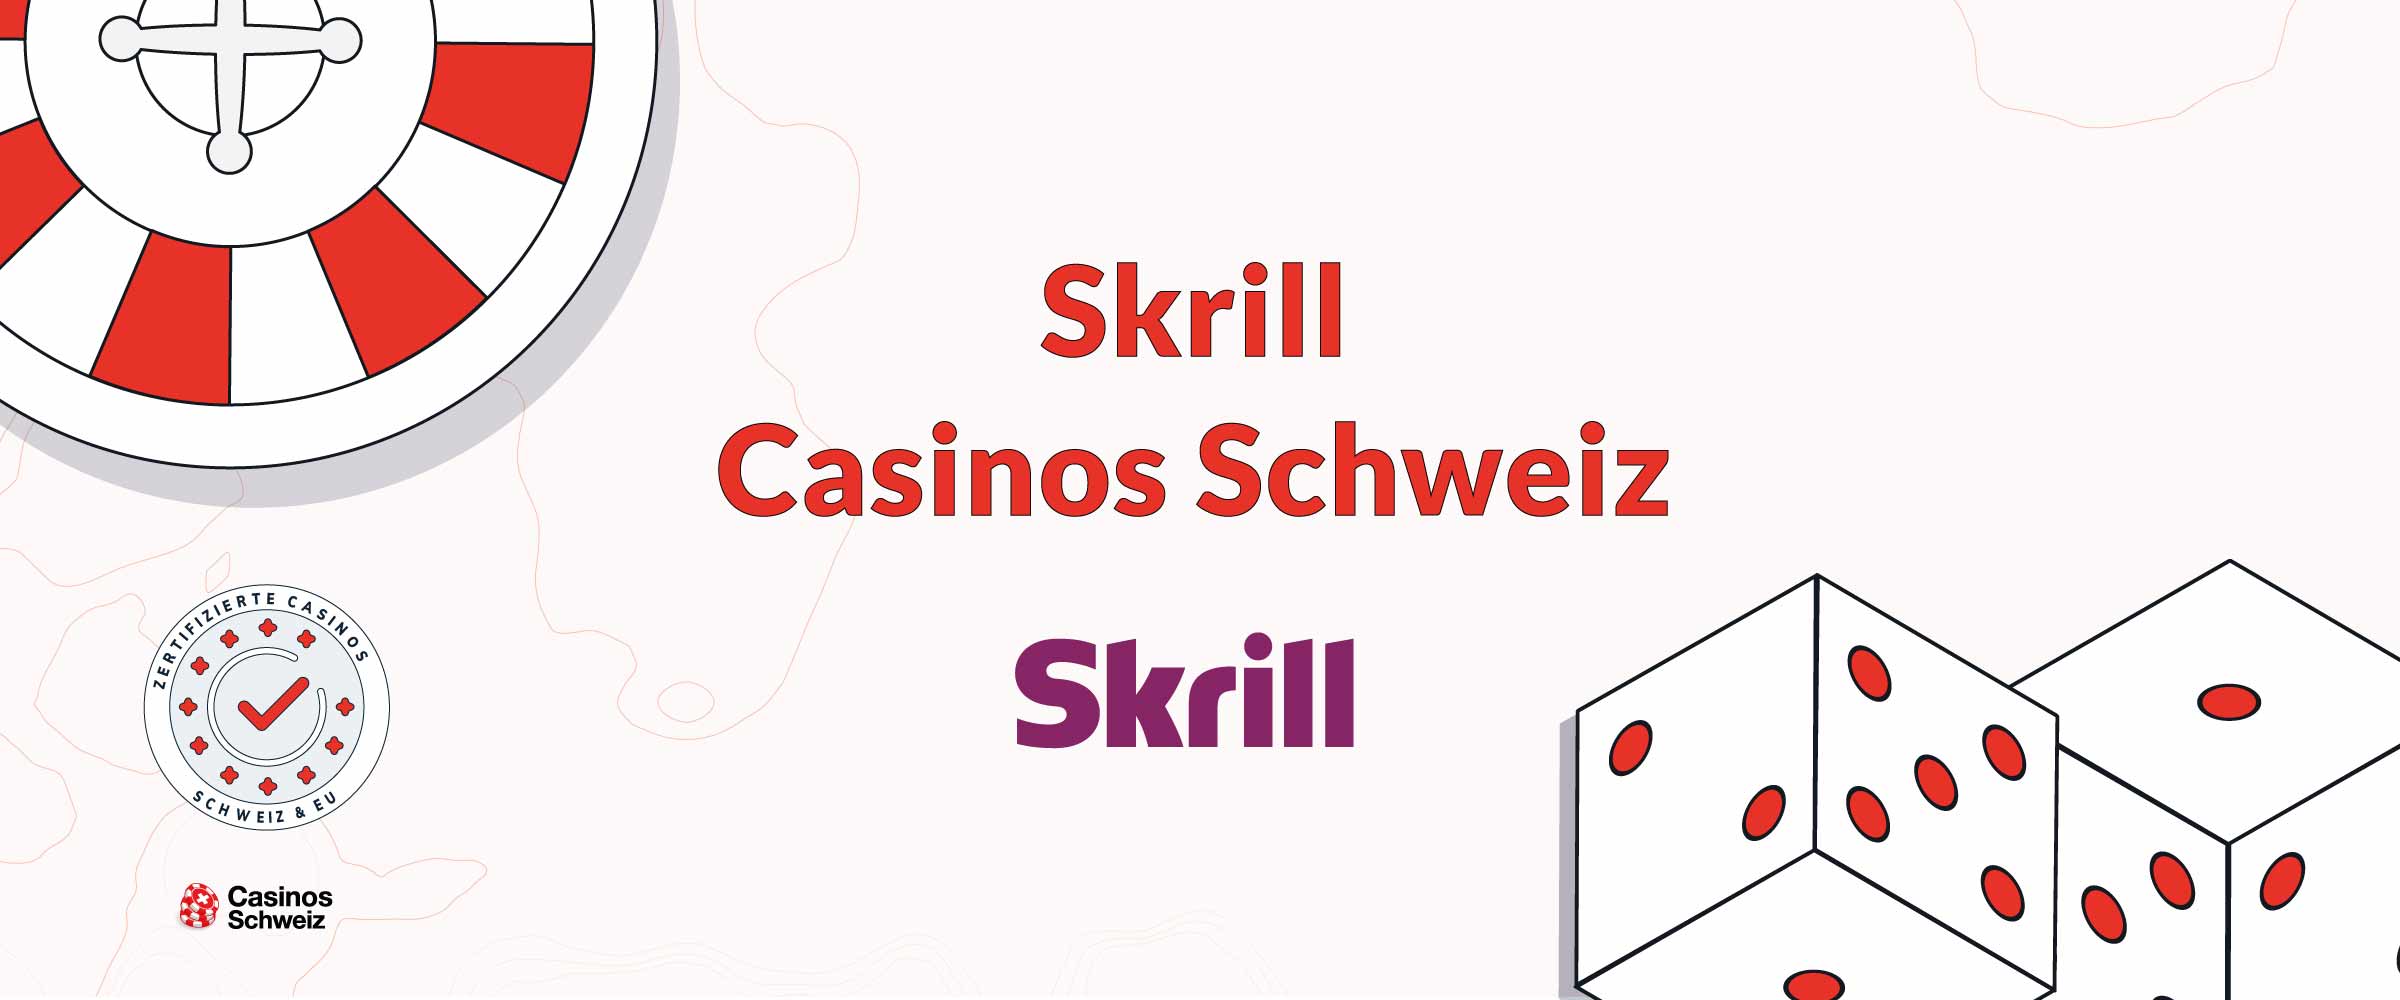 Skrill Casinos Schweiz